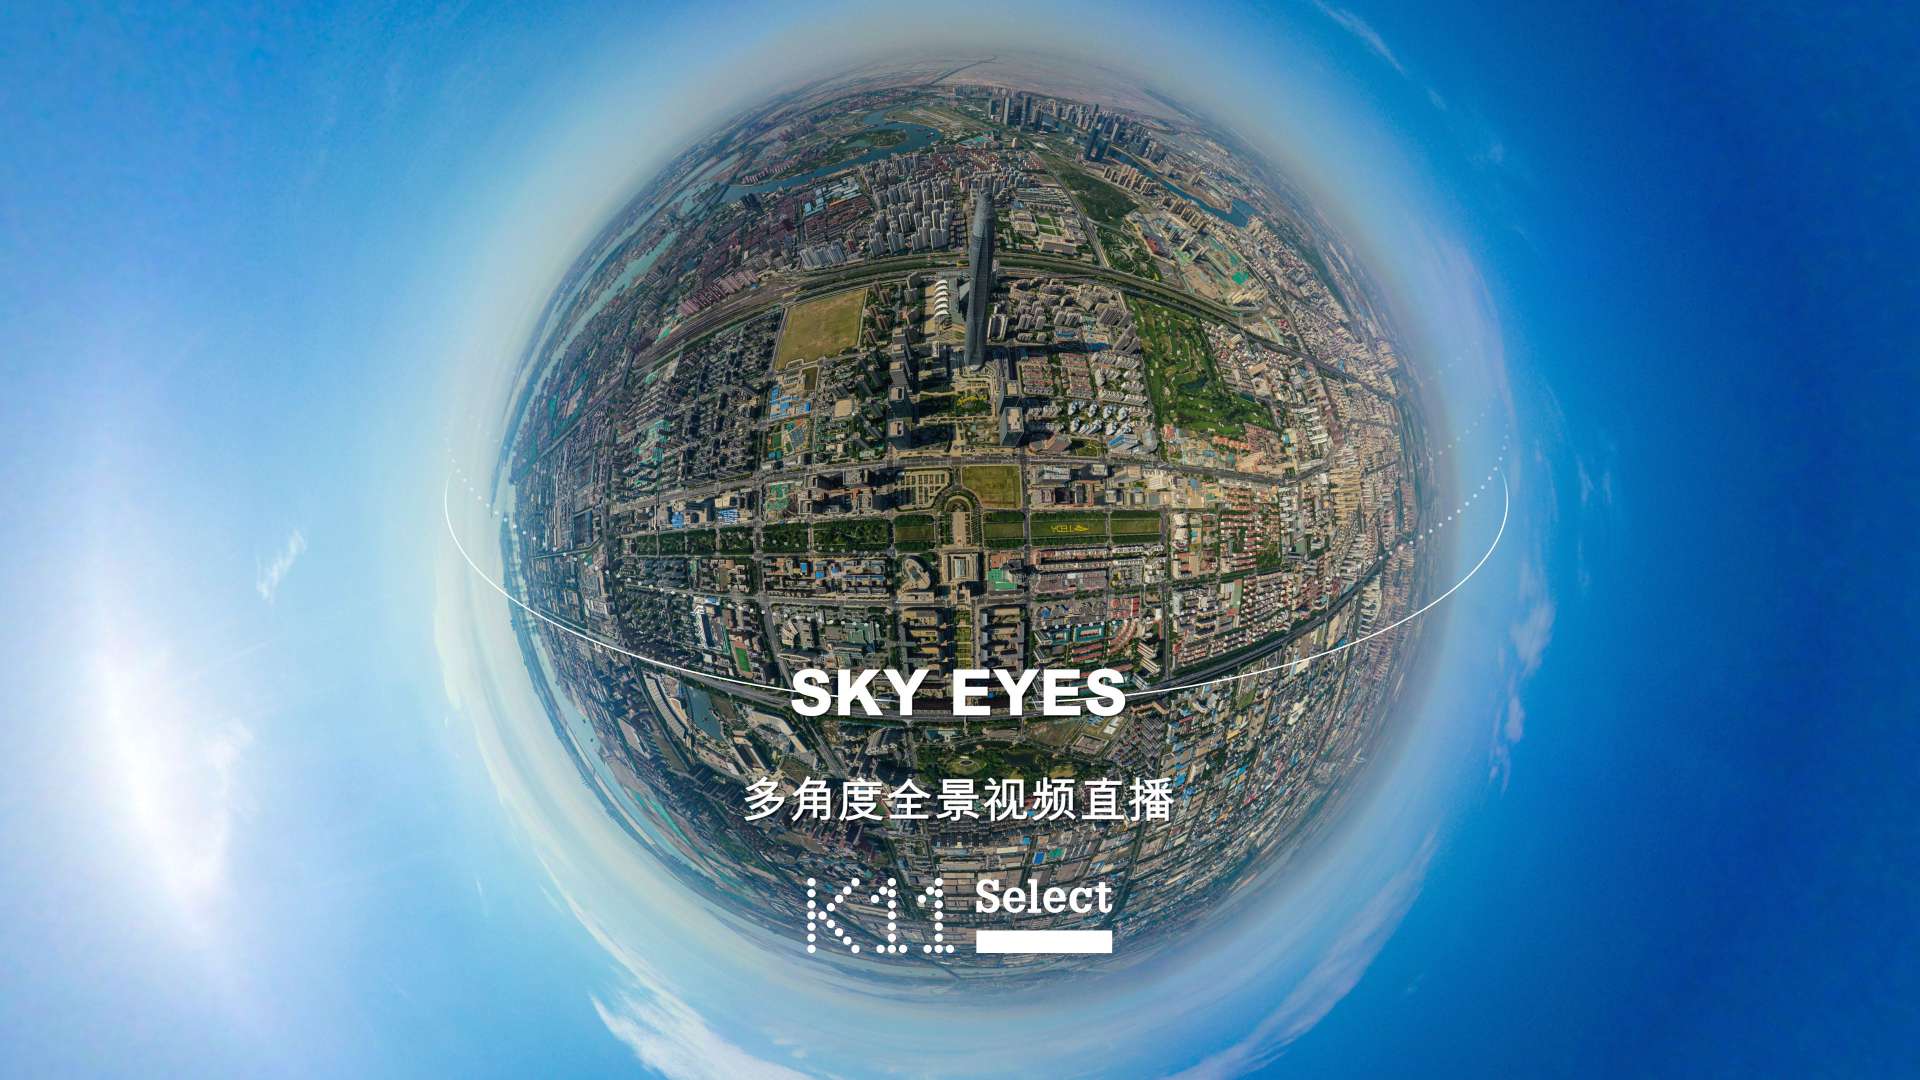 K11 | SKY EYES天空之眼 | FPV穿越北方第一高楼 |导演剪辑版